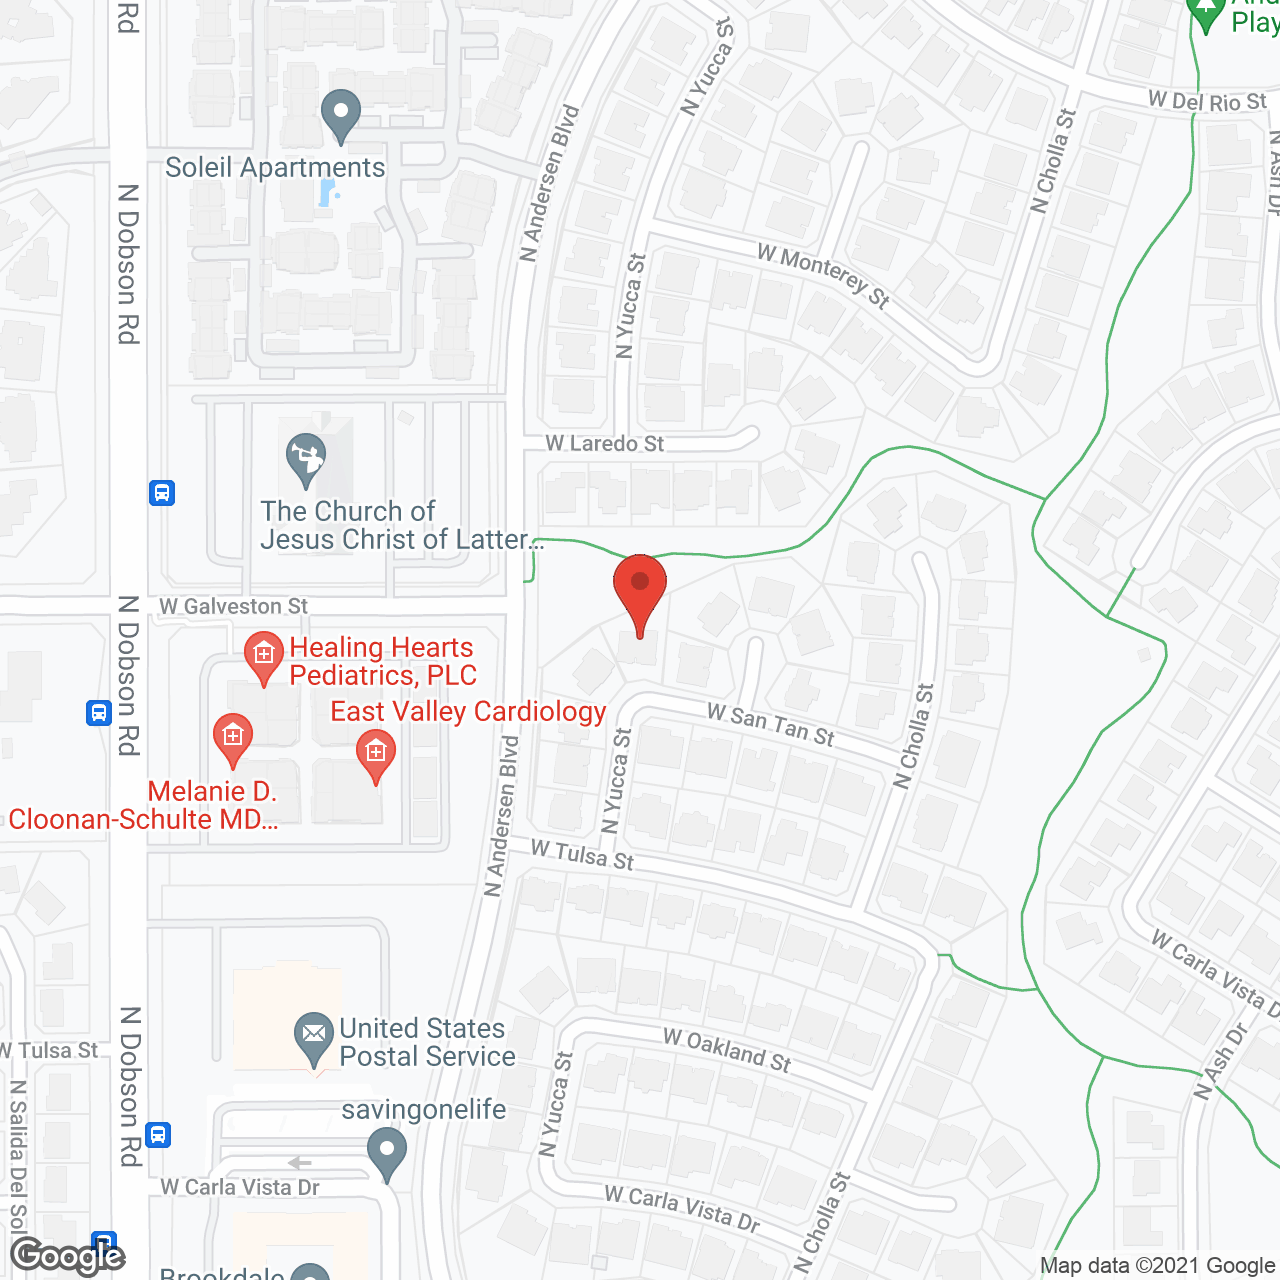 Andersen Springs Care Home II in google map